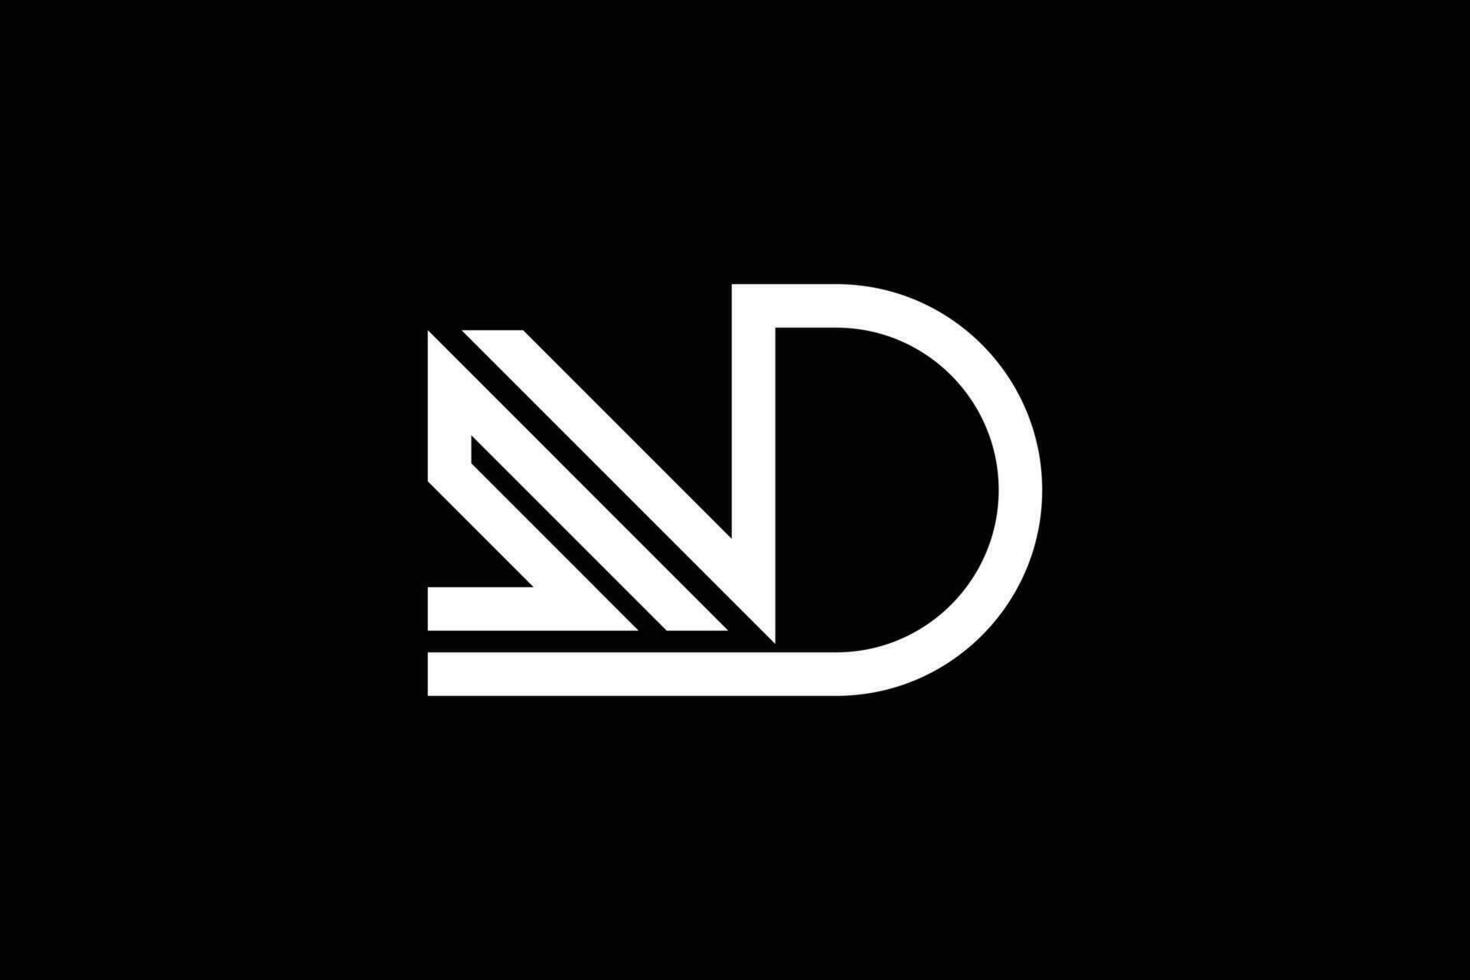 Letter N D S trendy vector logo design